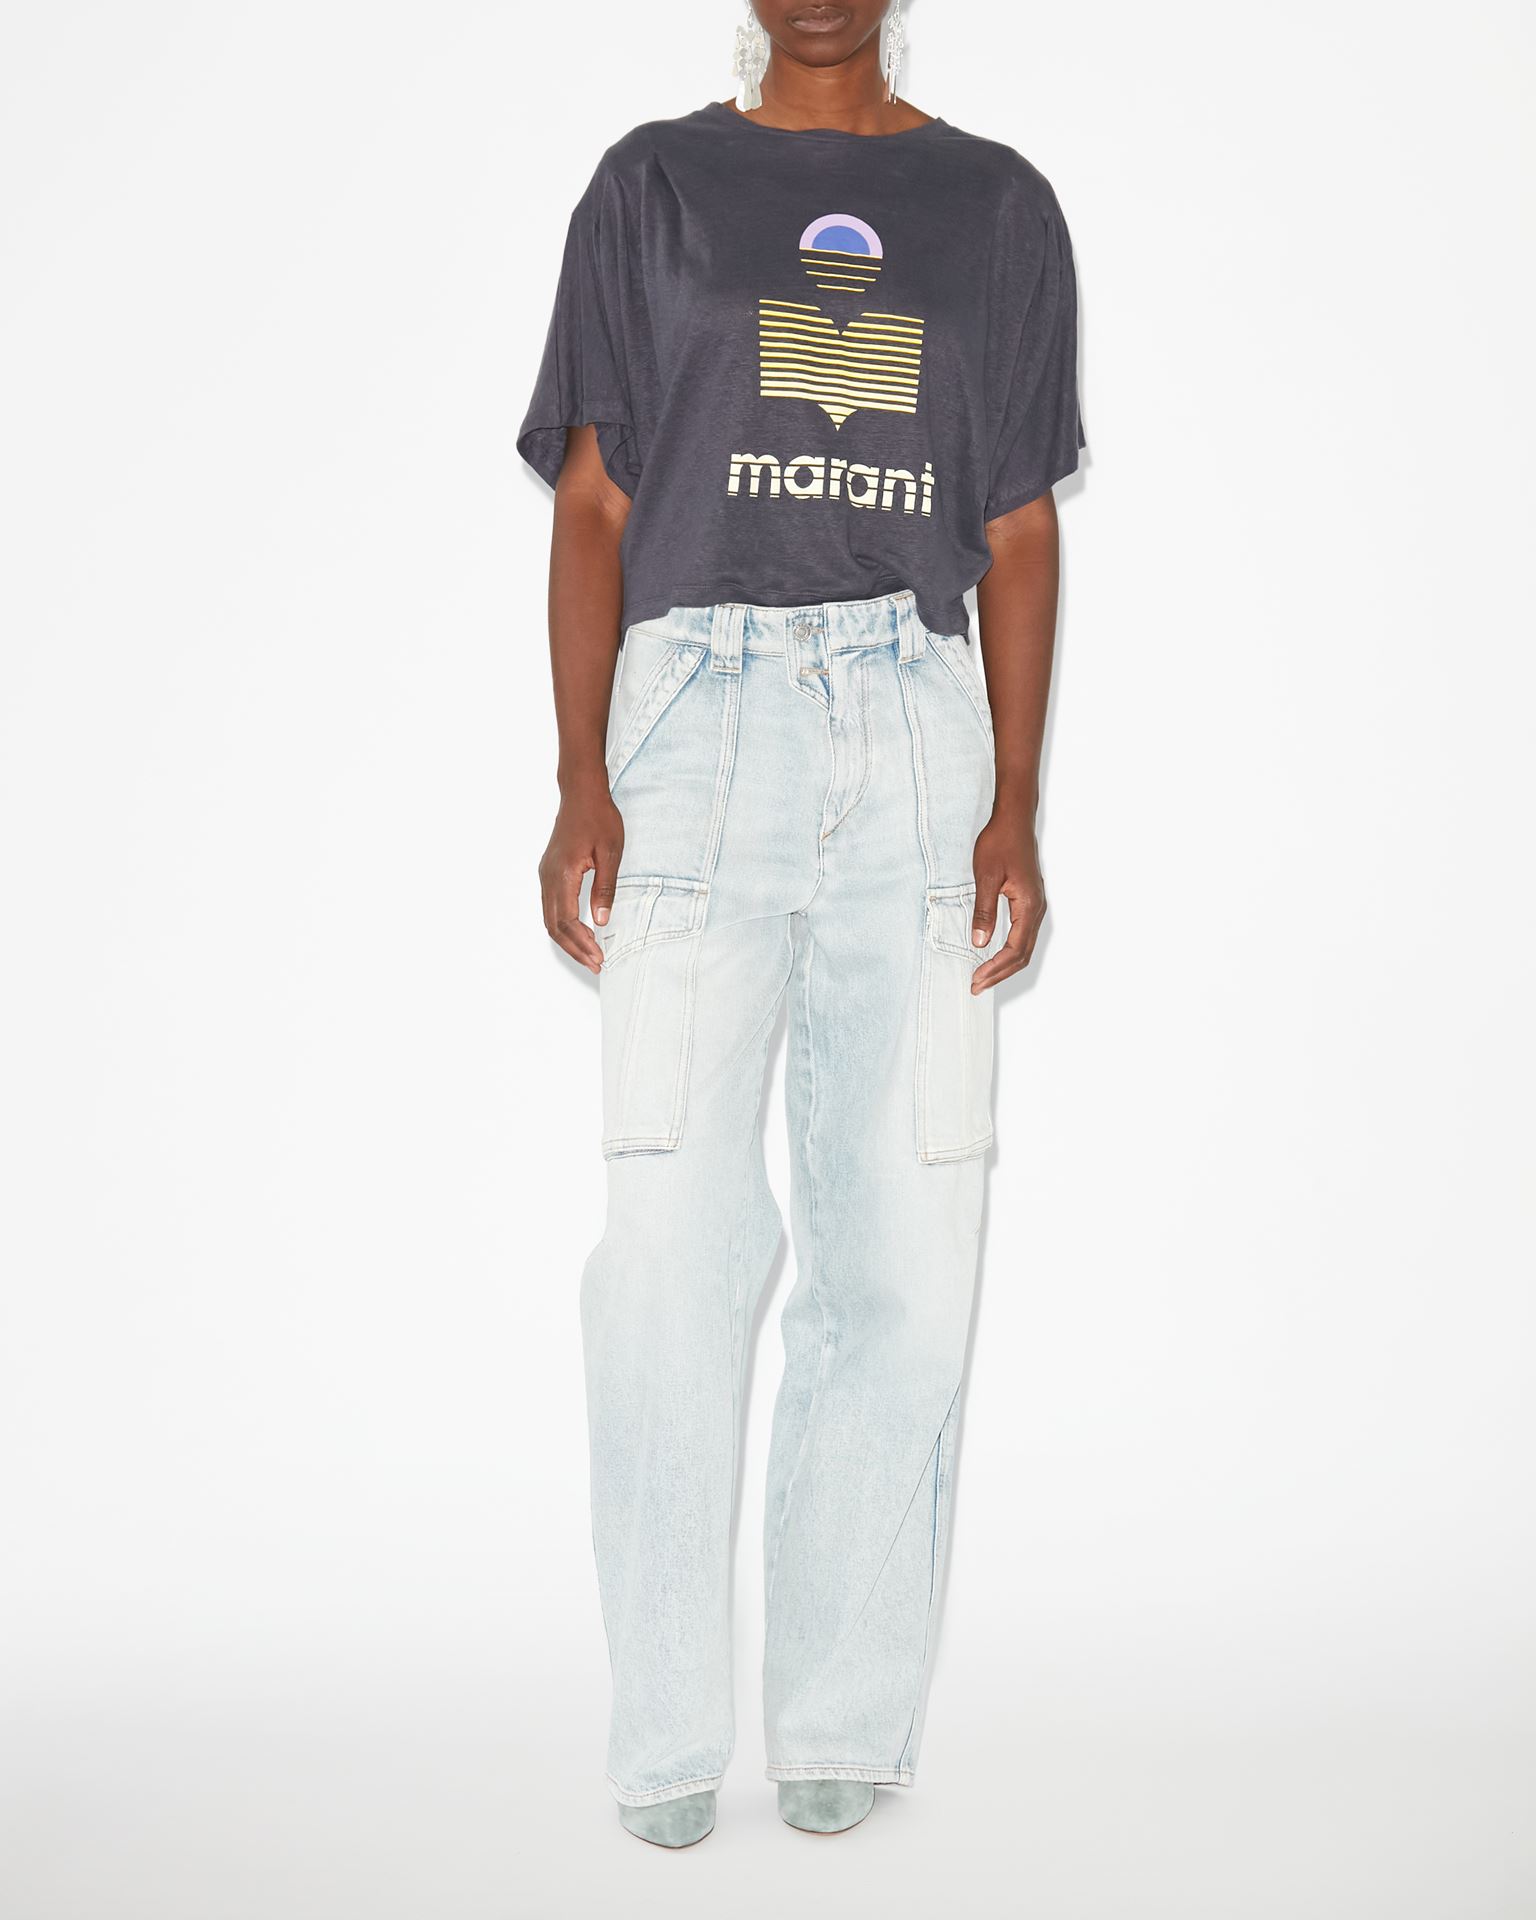 Isabel Marant Marant Étoile, Tee-shirt Kyanza - Femme - Noir